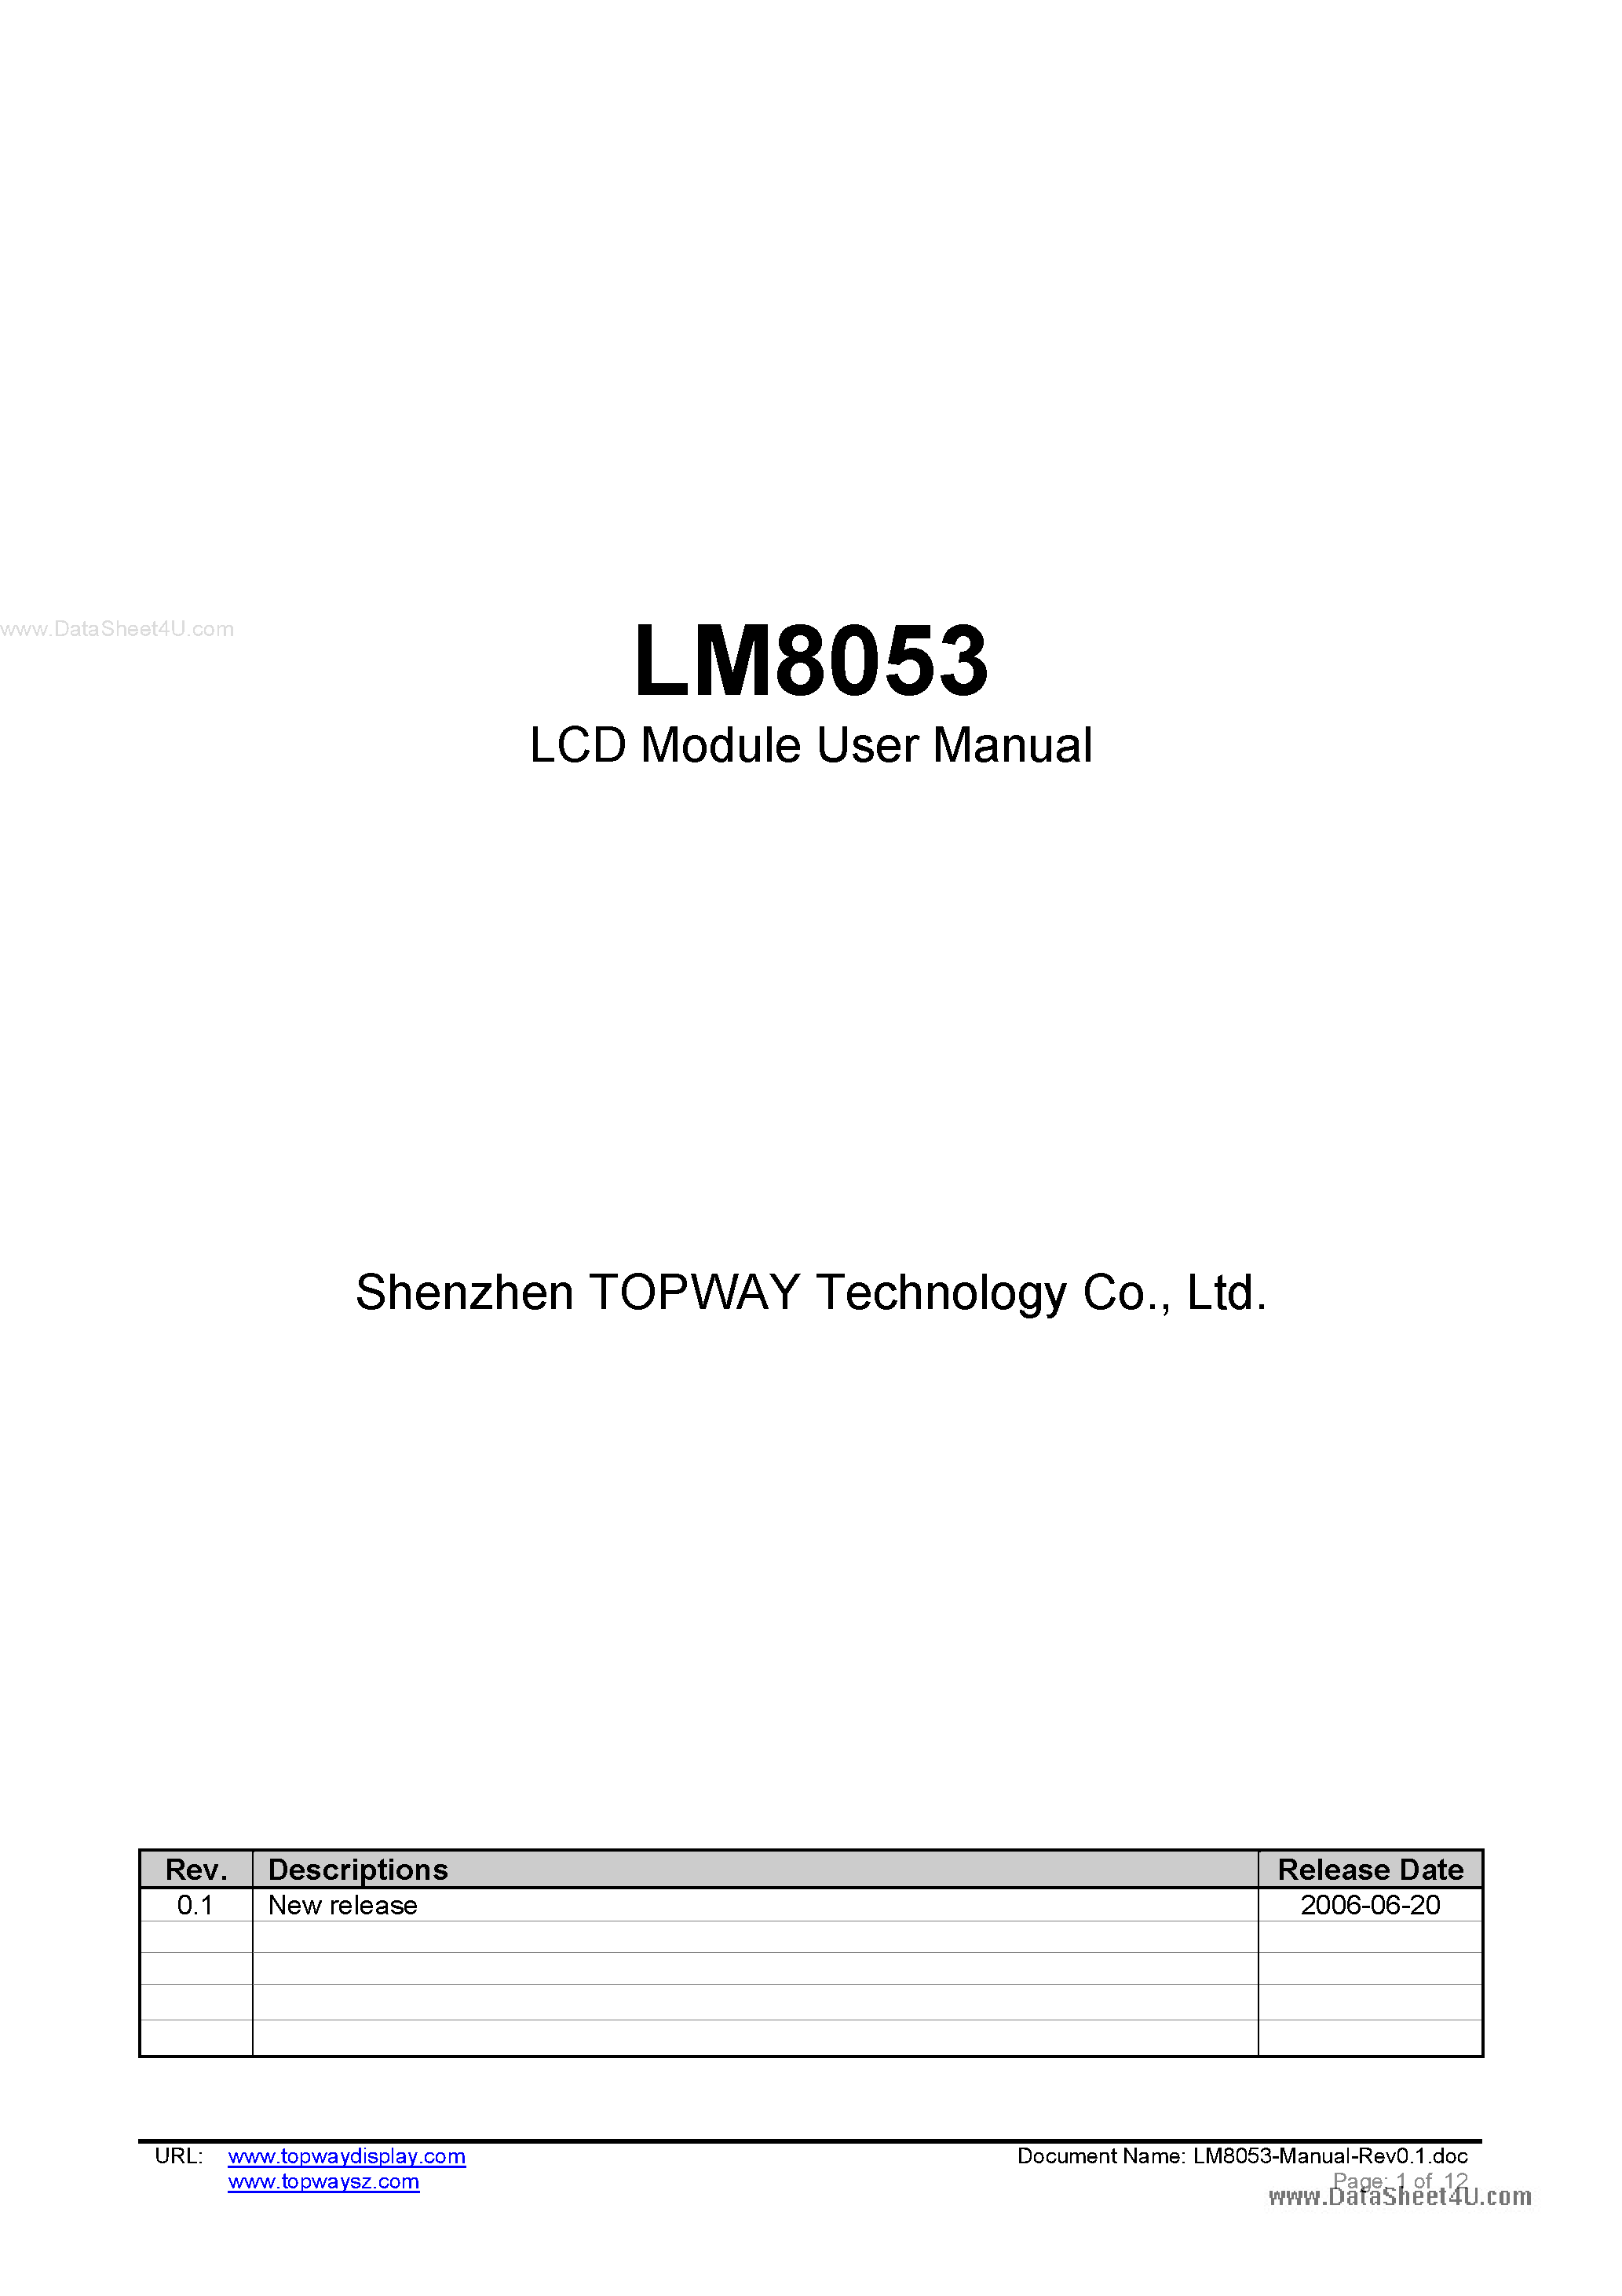 Даташит LM8053 - LCD Module страница 1